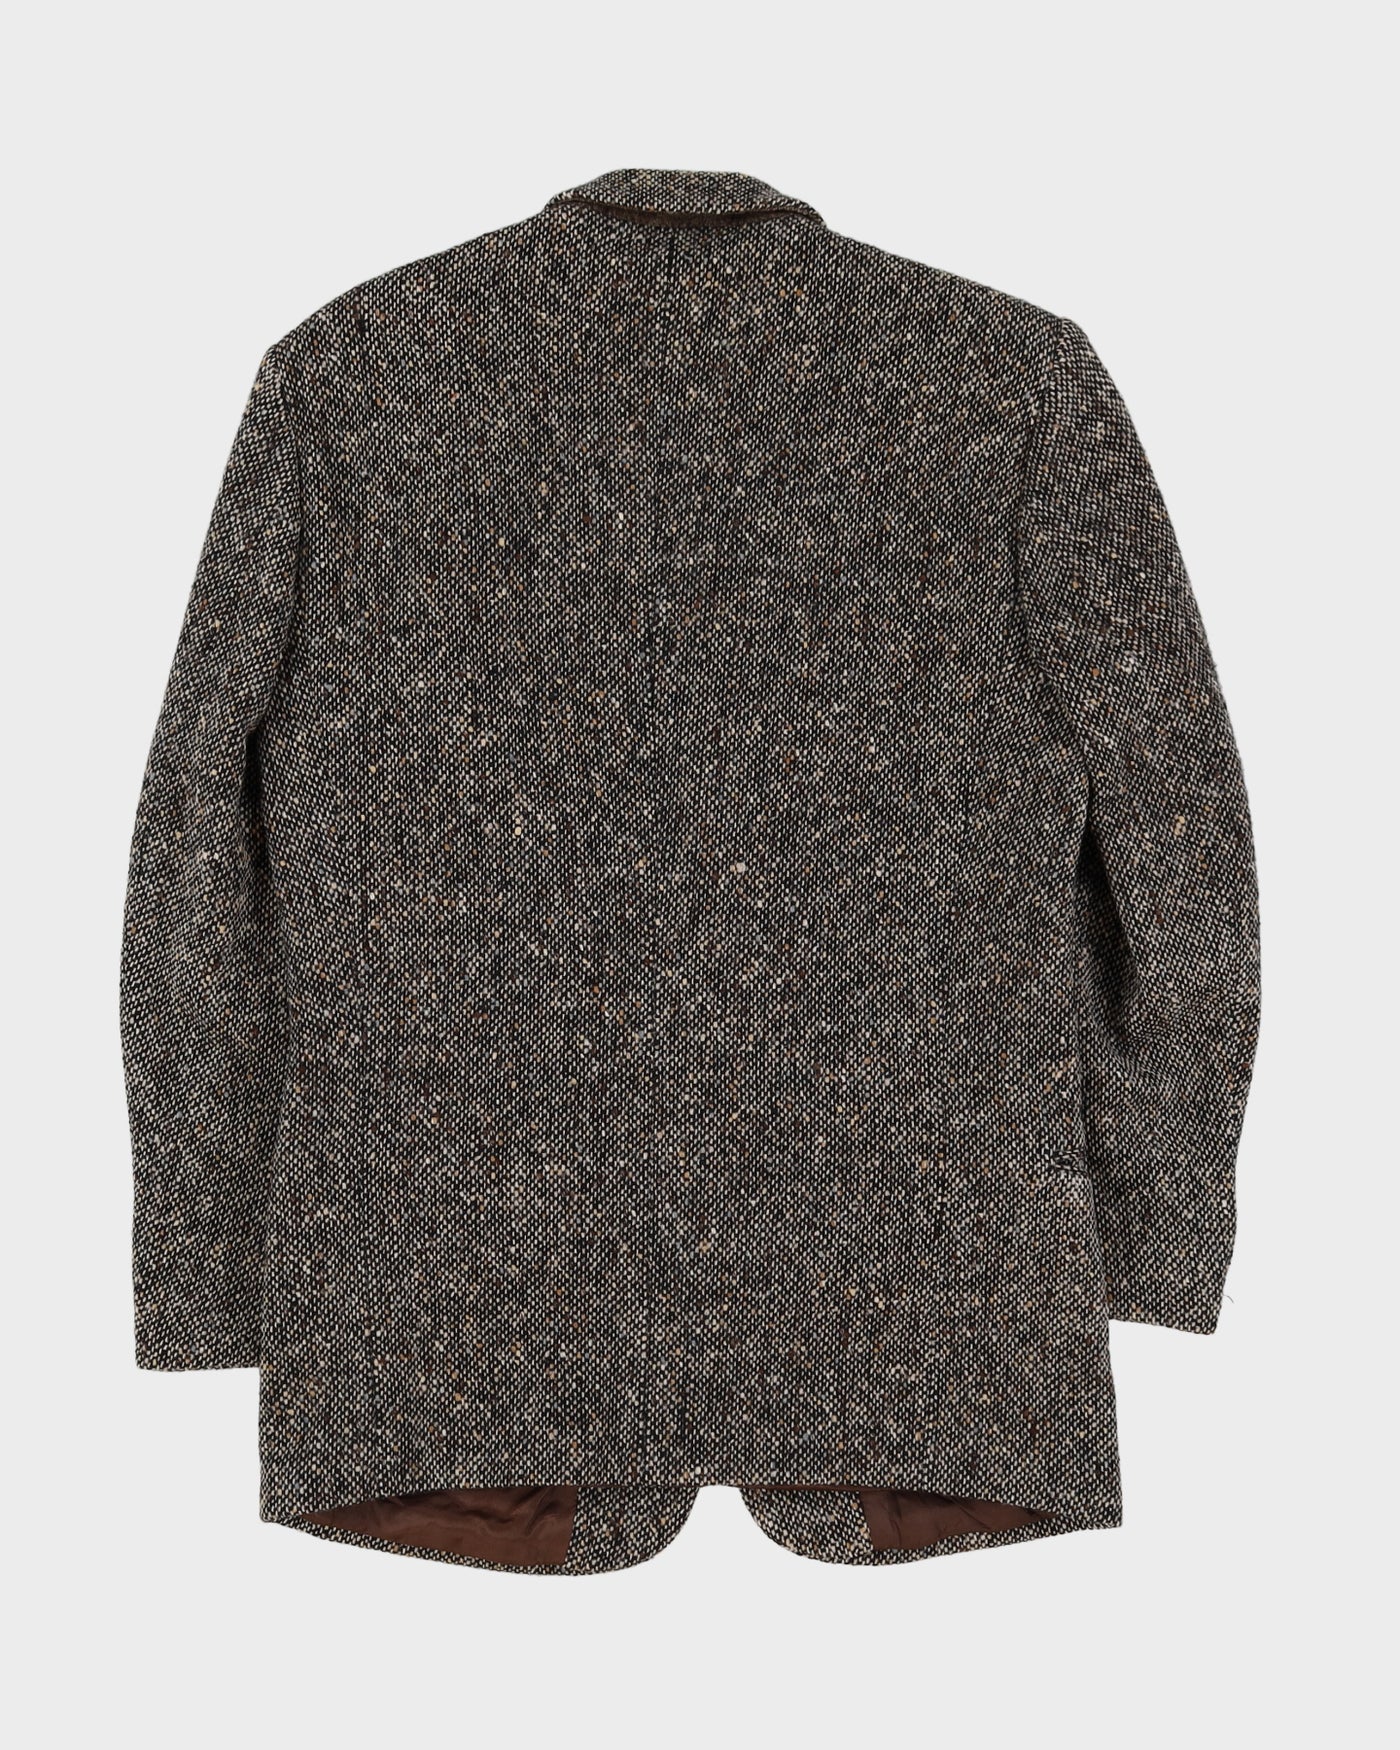 Hugo Boss Brown Donegal Tweed Blazer Jacket - S